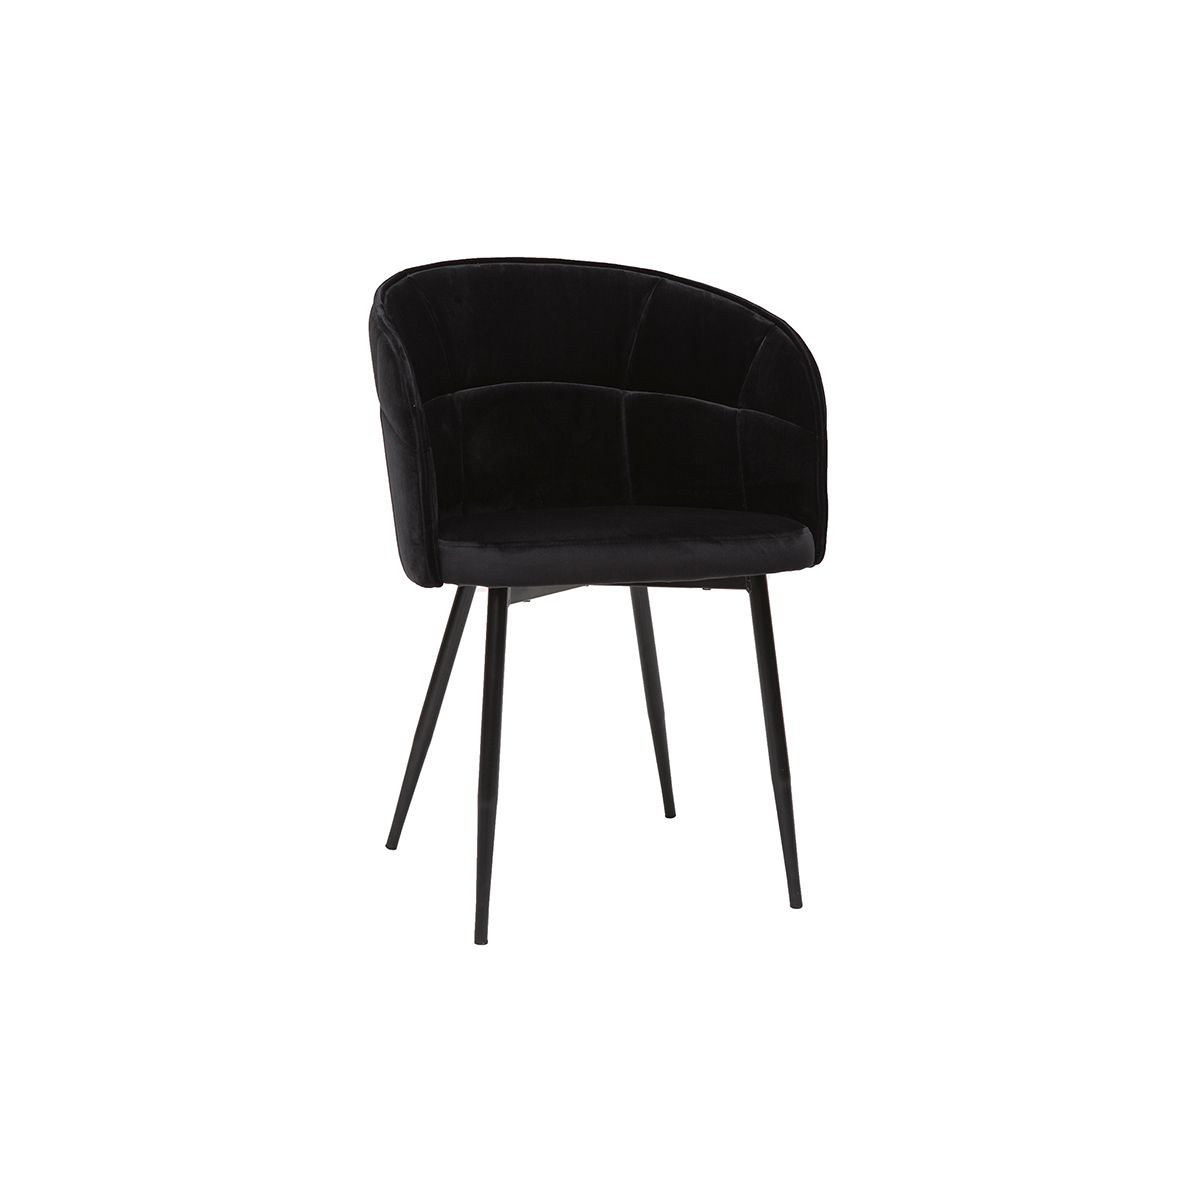 Chaise design noire en tissu velours et métal JOLLY vue1